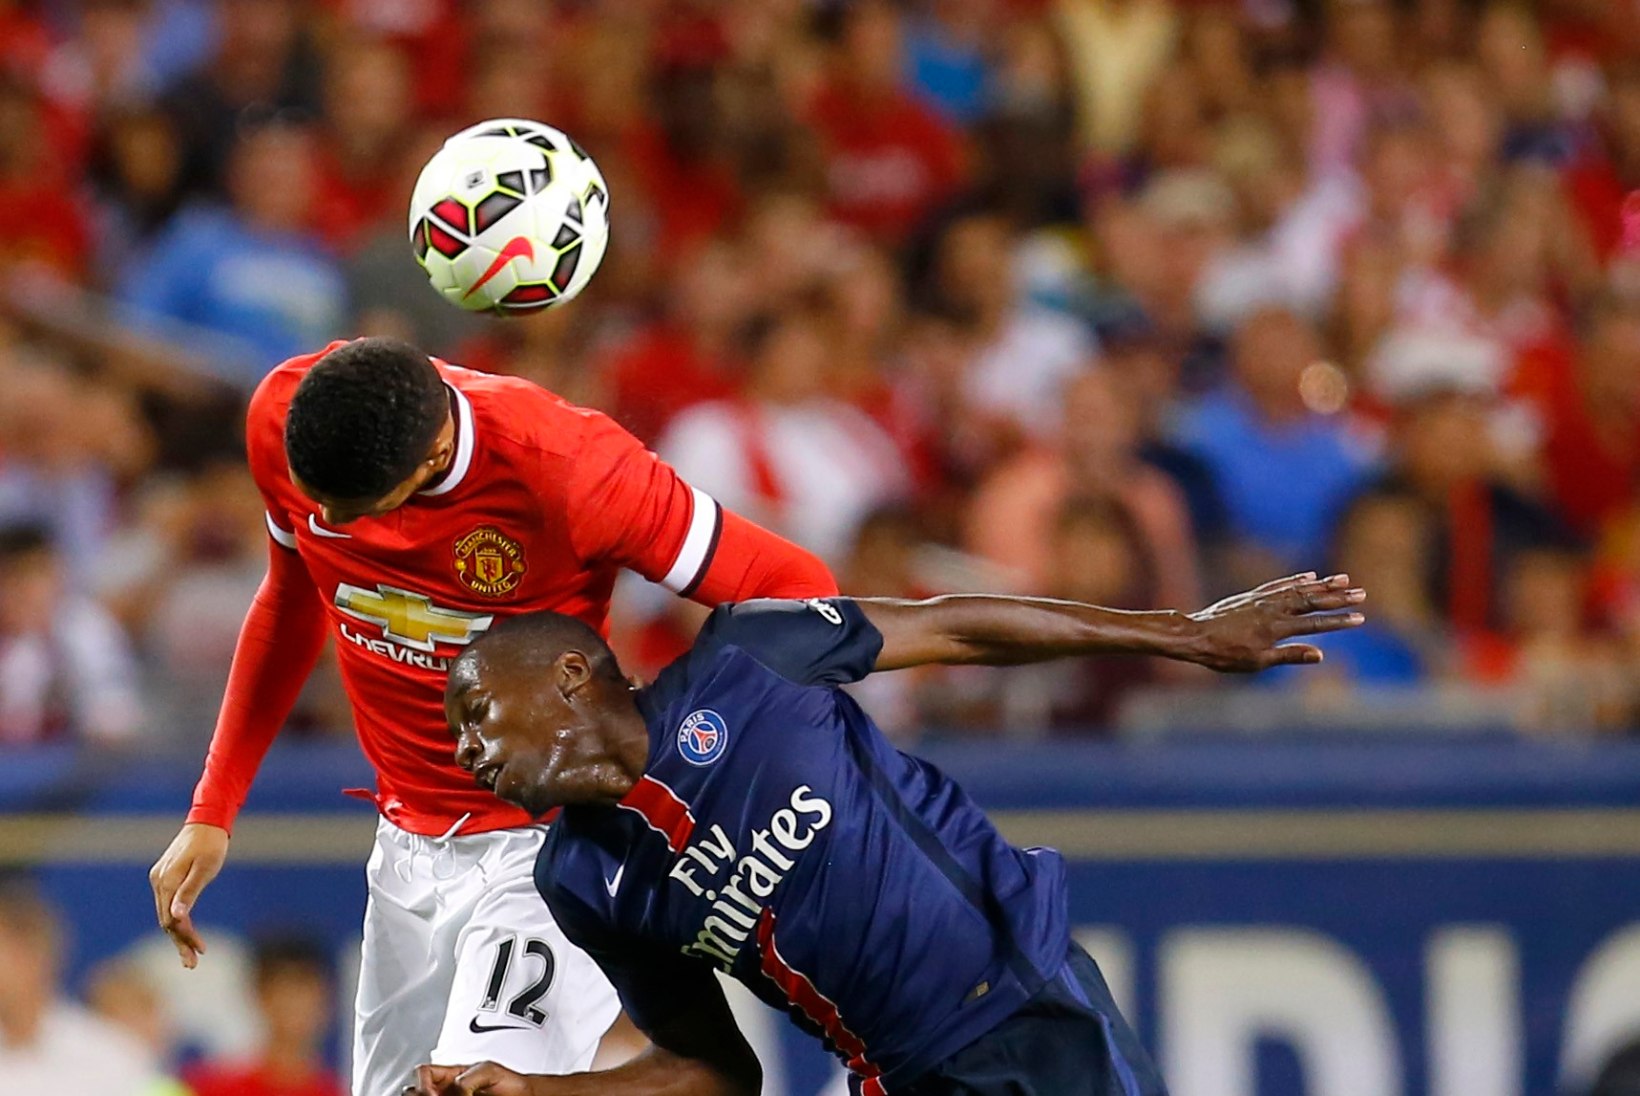 GALERII | PSG suutis Manchester United vastupanu murda juba avapoolajal